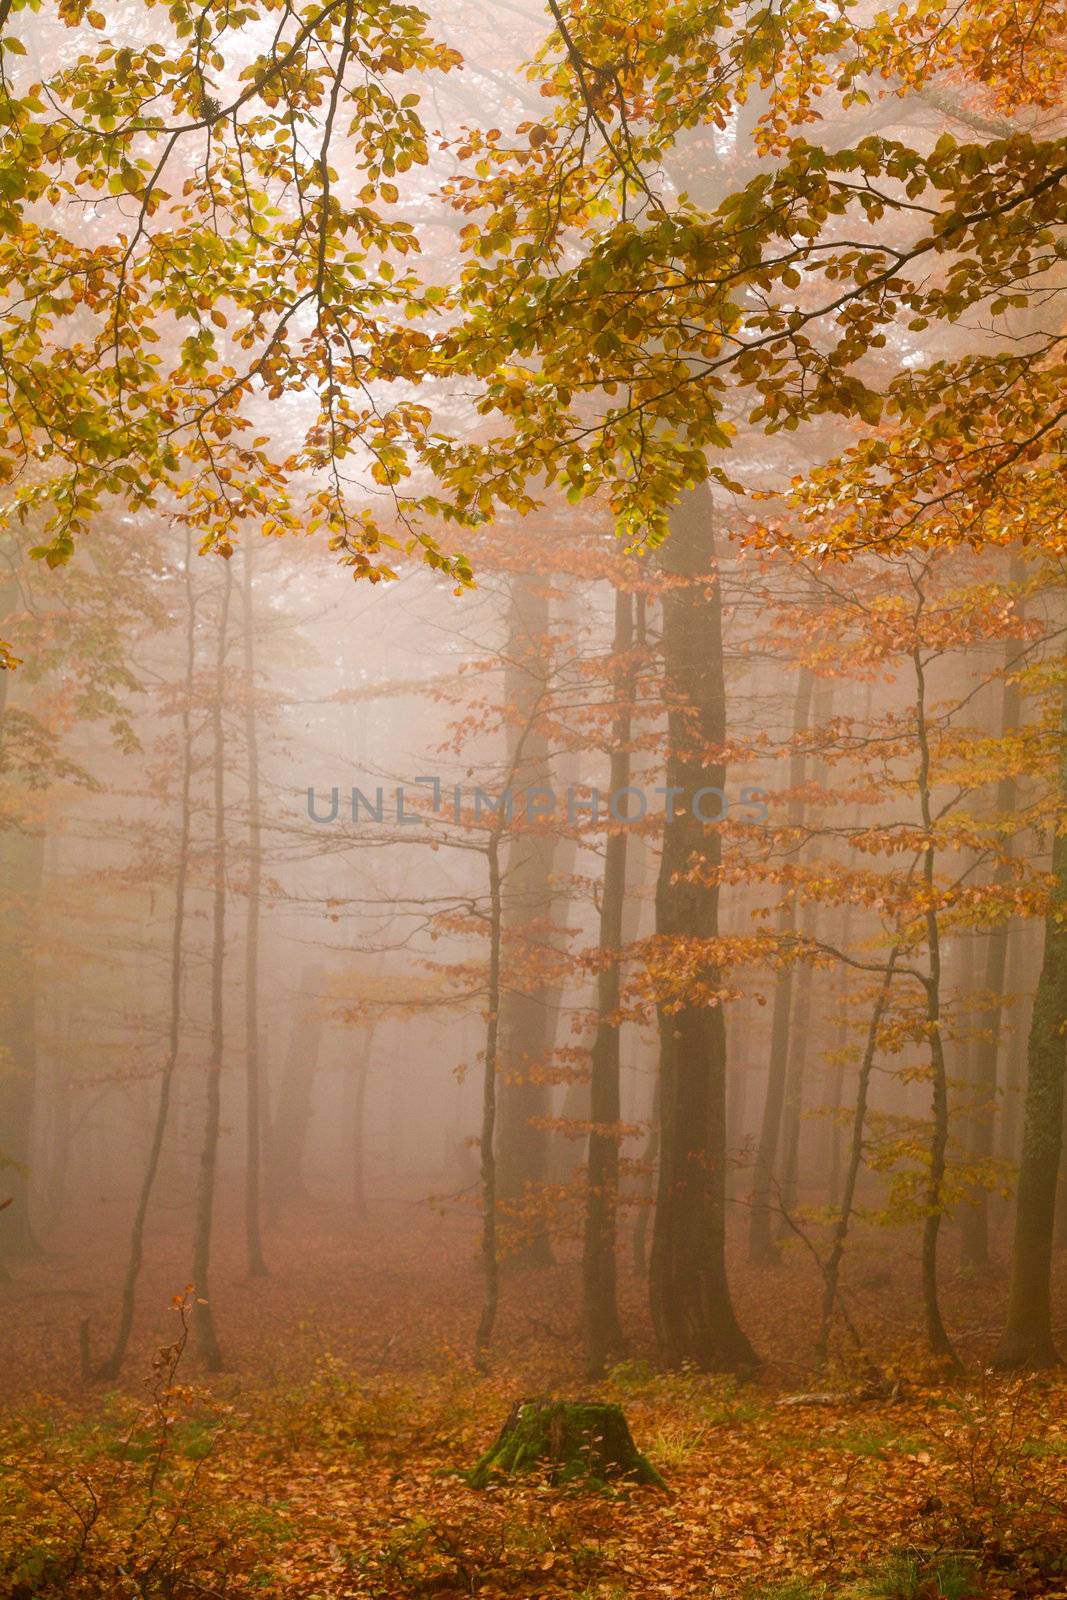 Animage of mist in autumn forest. Season theme.